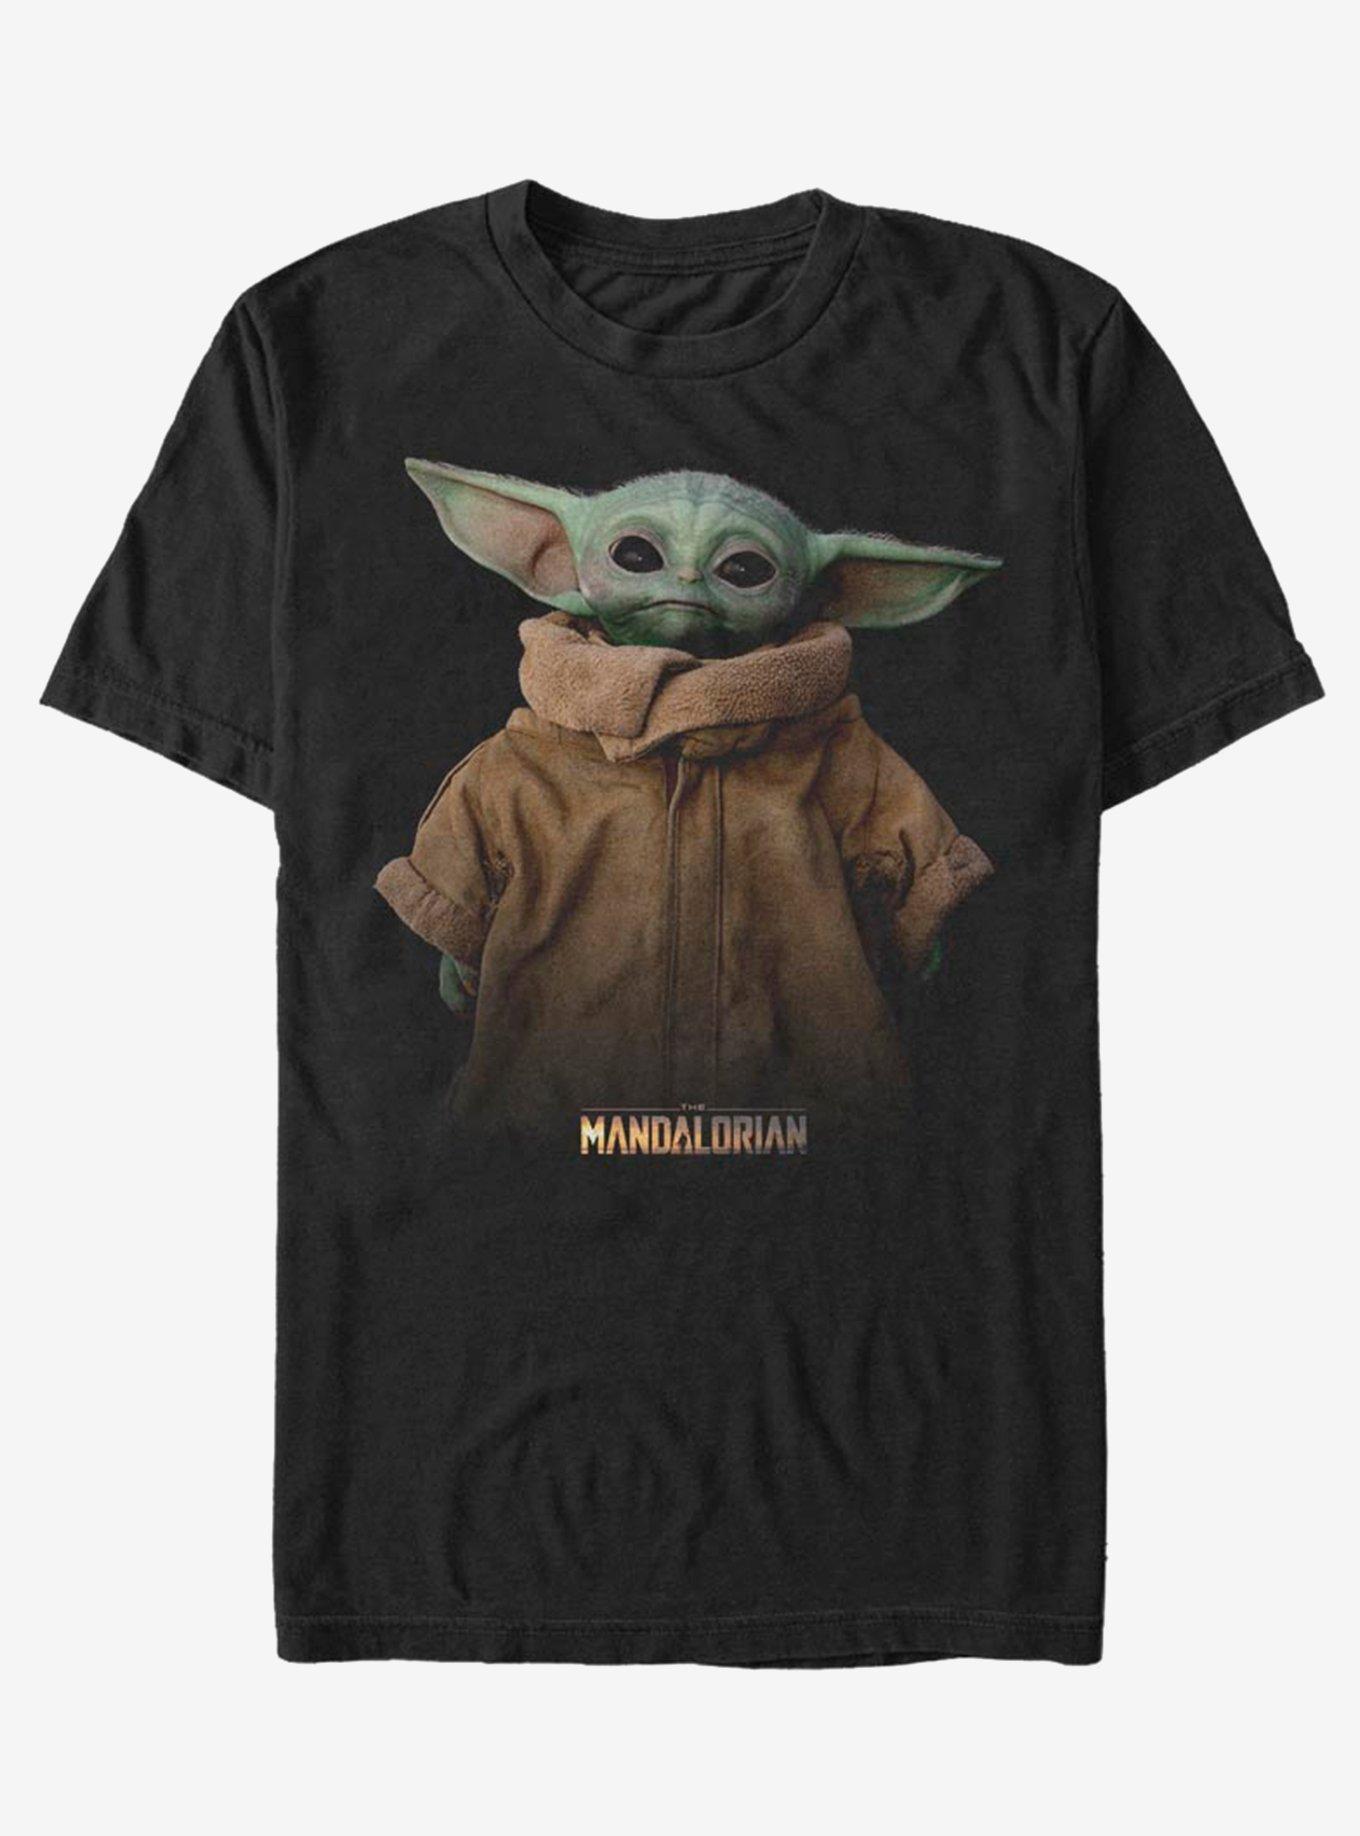 Star Wars The Mandalorian The Child Full Size T-Shirt, BLACK, hi-res